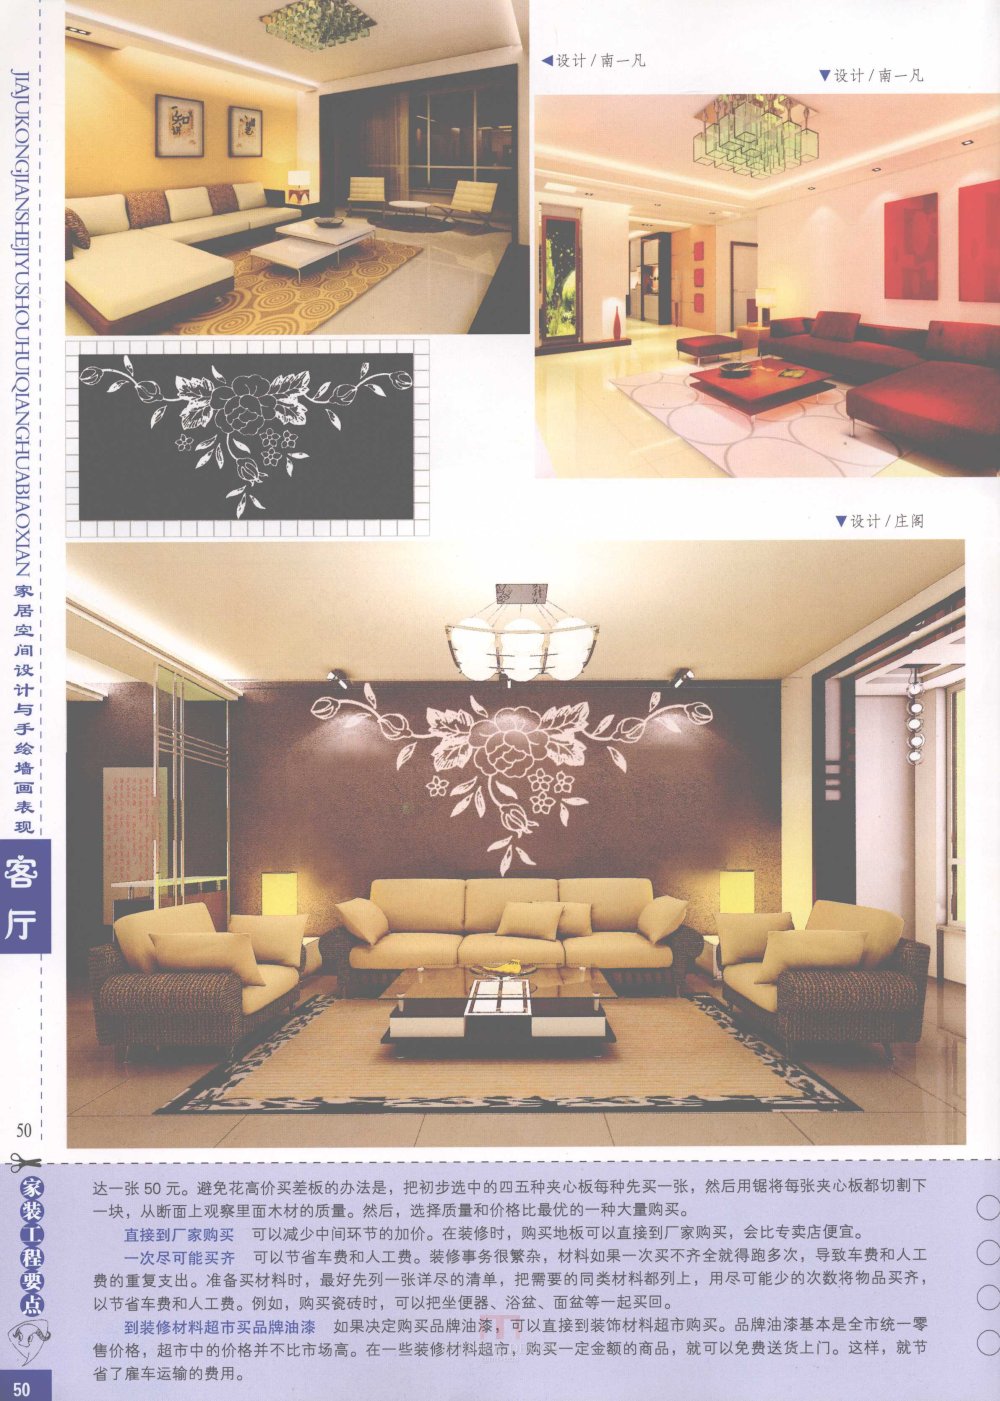 家居空间设计与手绘墙画表现客厅_家居空间设计与手绘墙画表现客厅-52.jpg